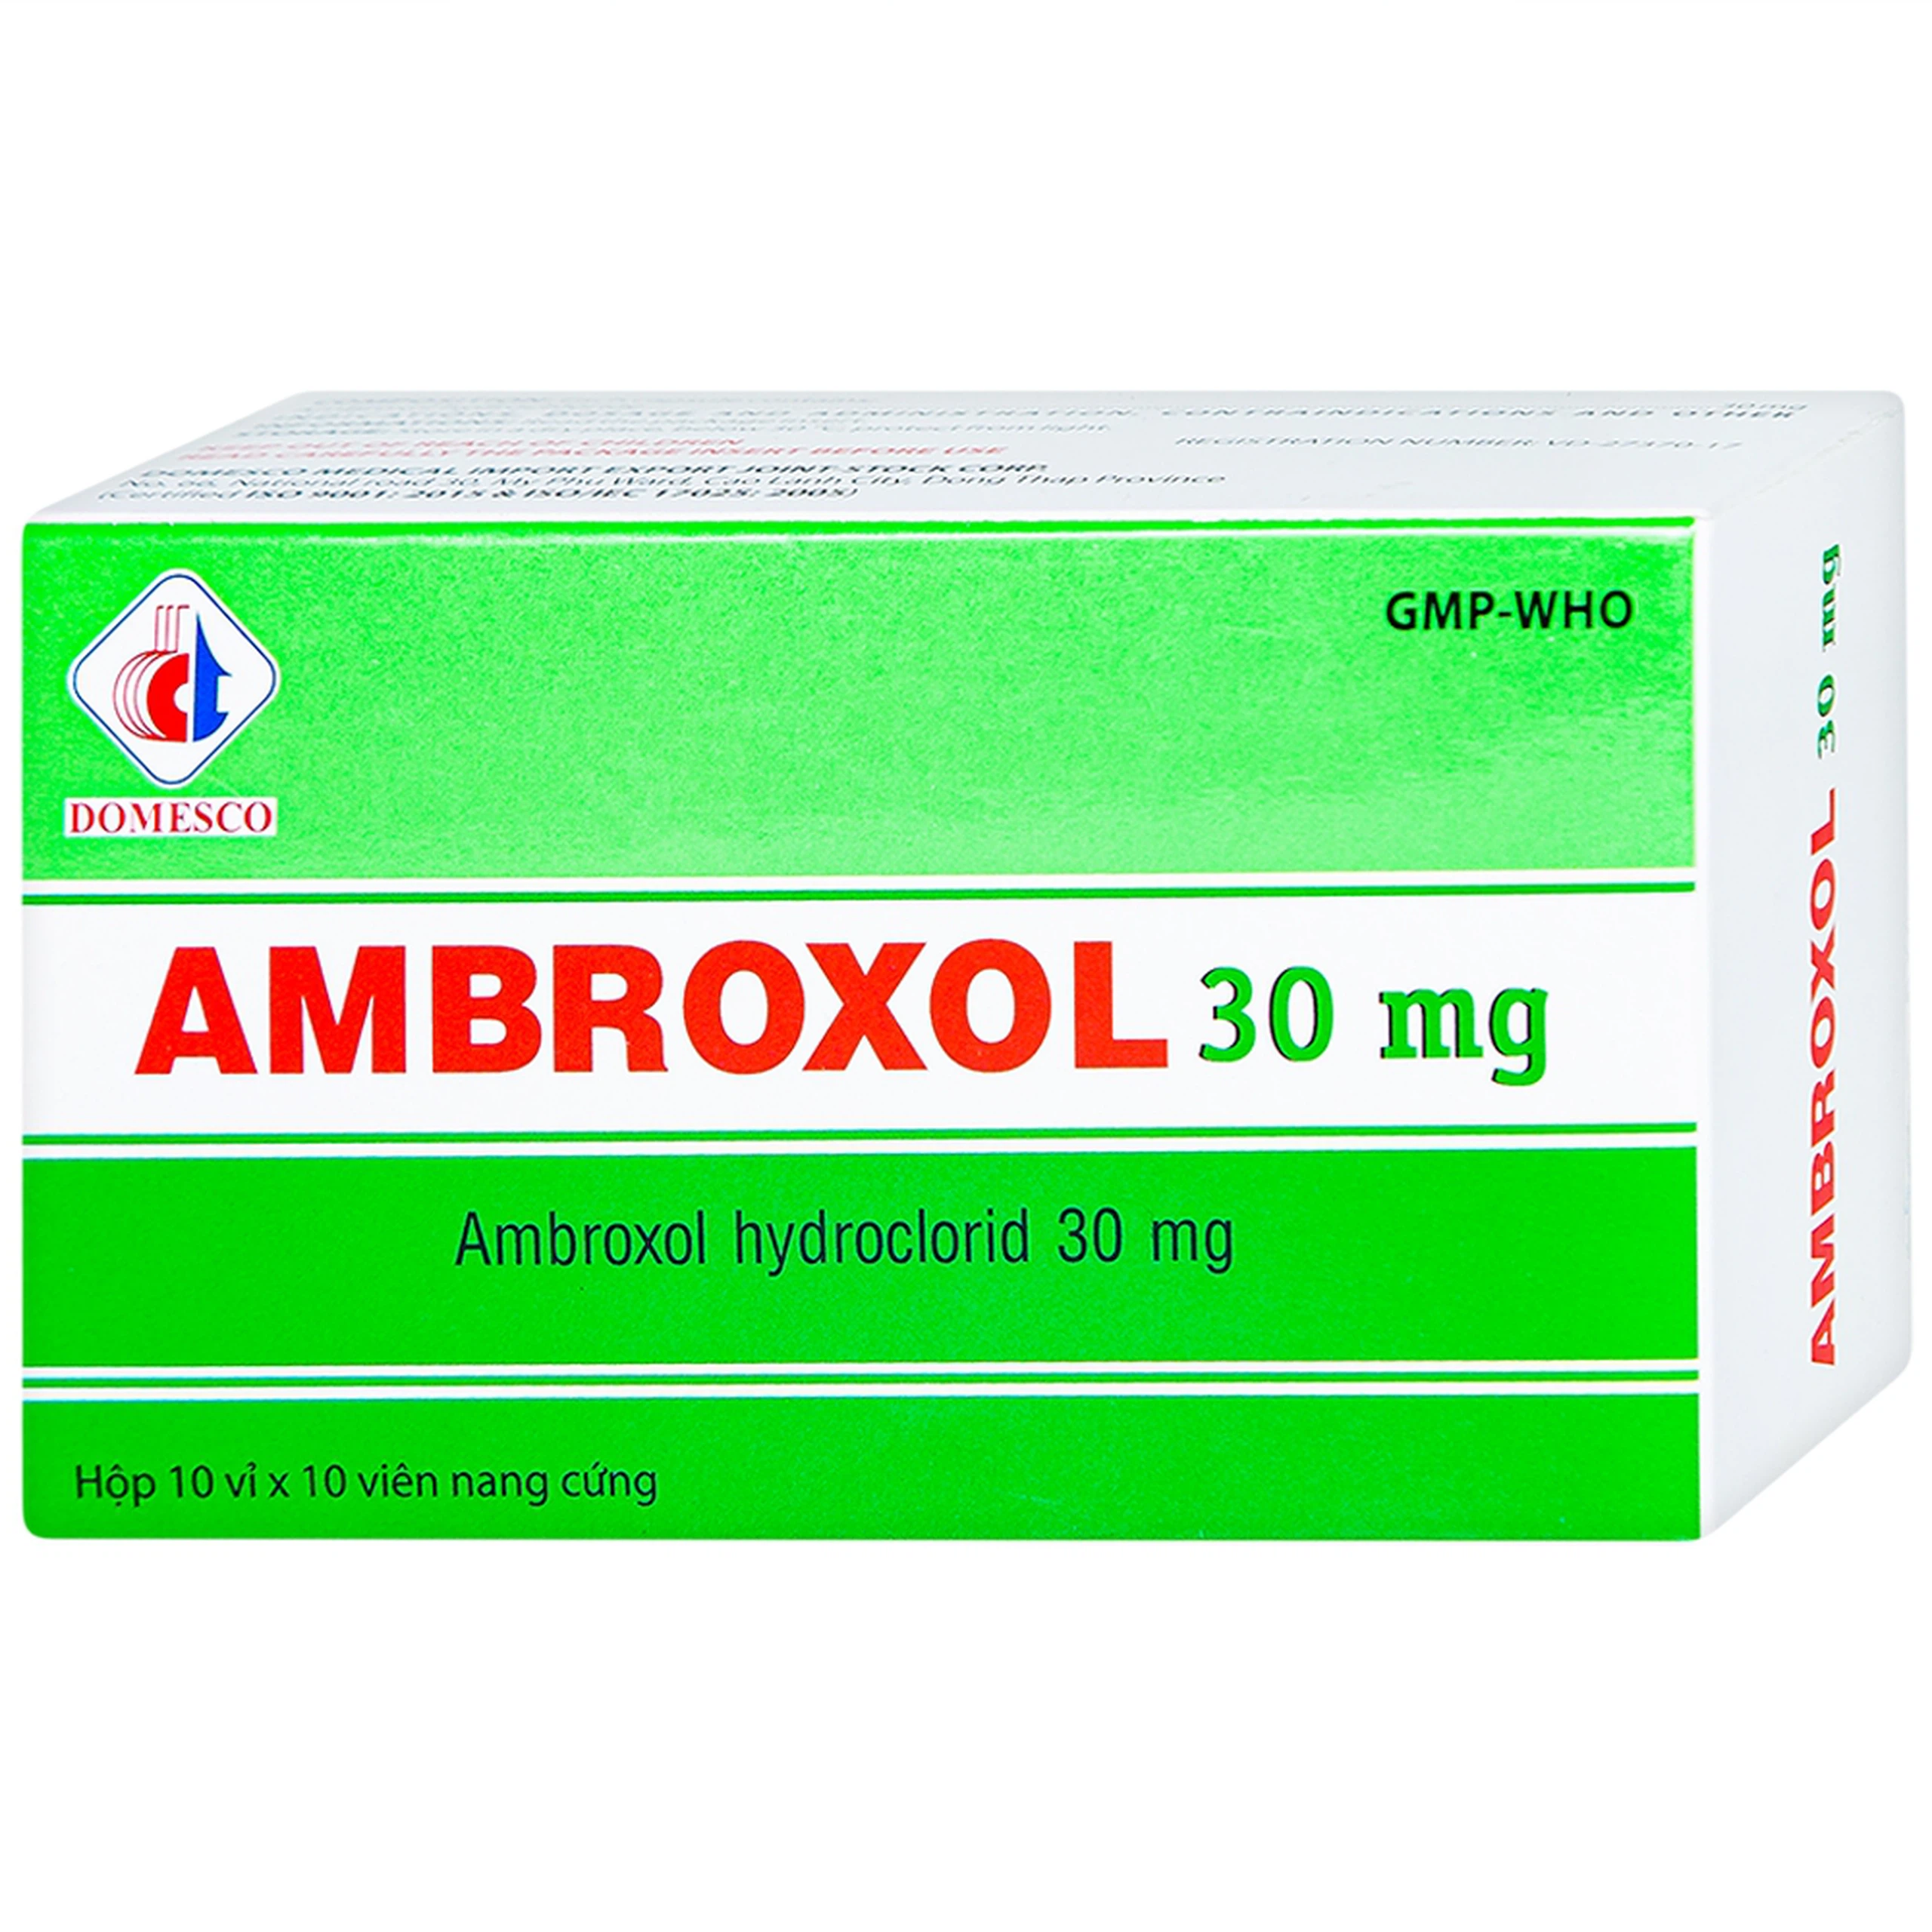 Thuốc Ambroxol 30mg Domesco điều trị viêm phế quản, hen phế quản (10 vỉ x 10 viên)